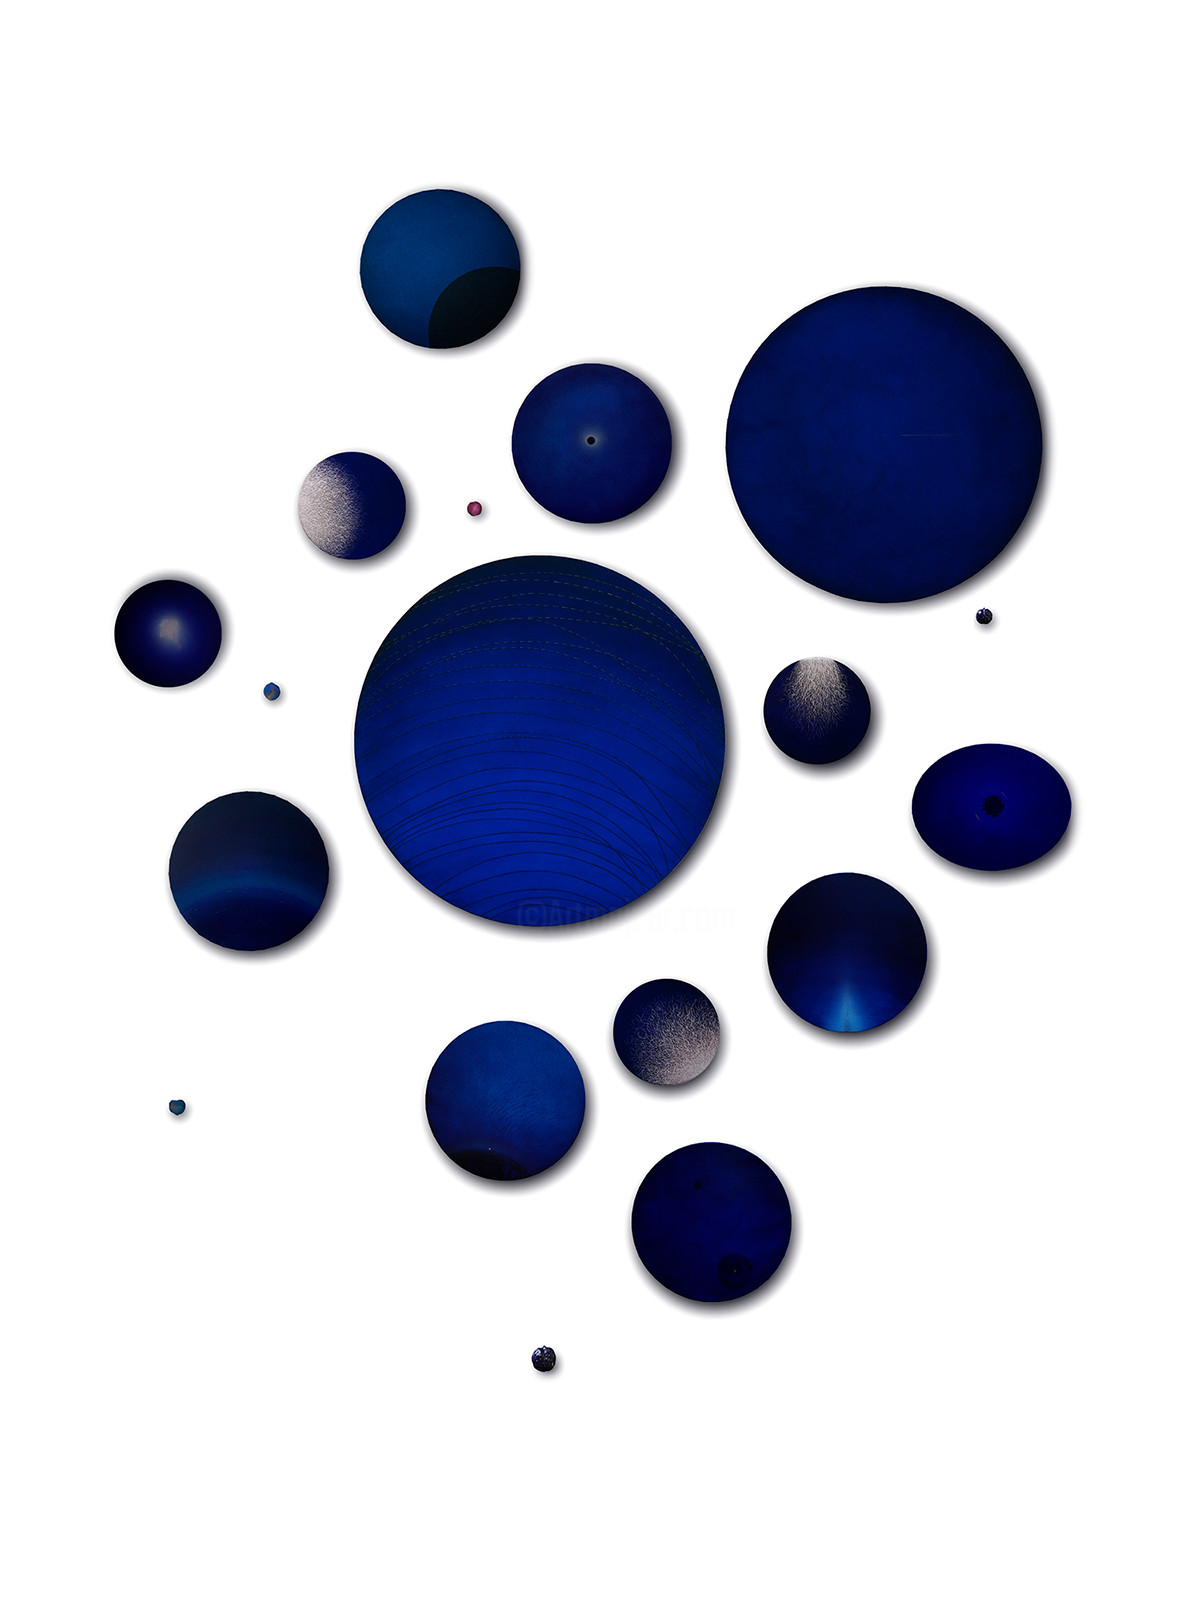 Suo Yuan Wang - Composition des dessins réalisés à la base des pigments bleu